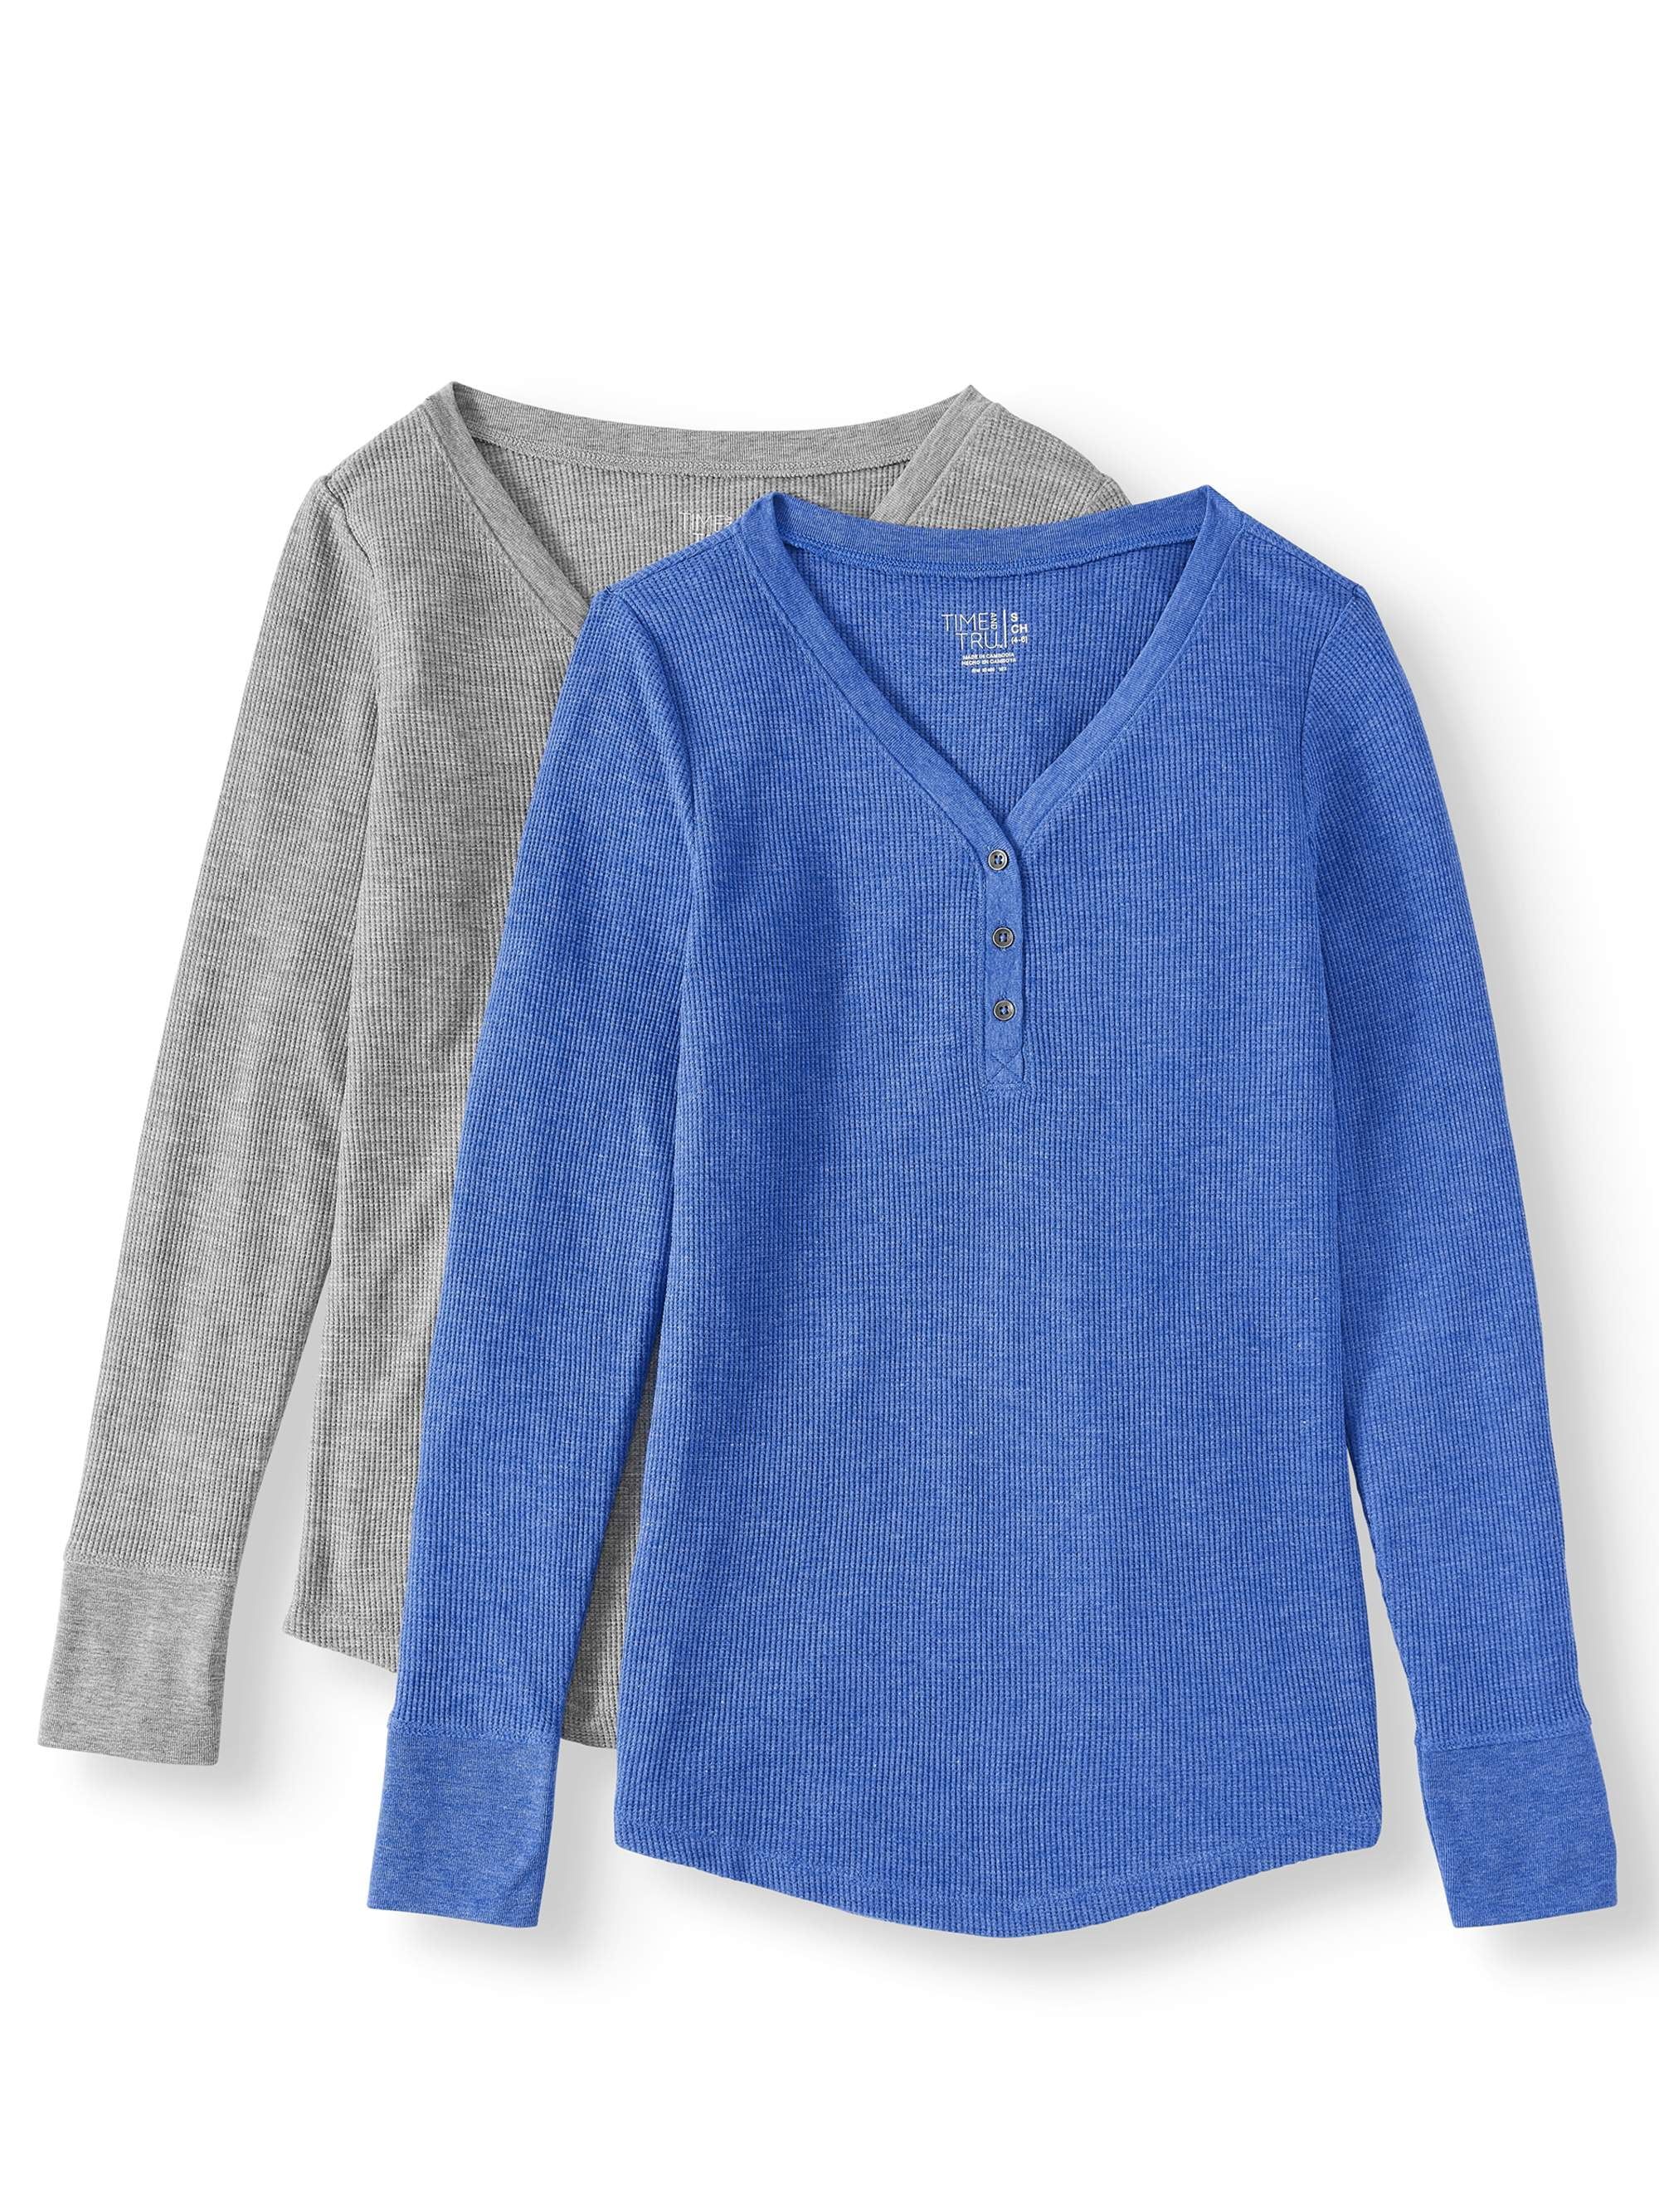 Women's Crewneck Sweatshirt | Walmart (US)